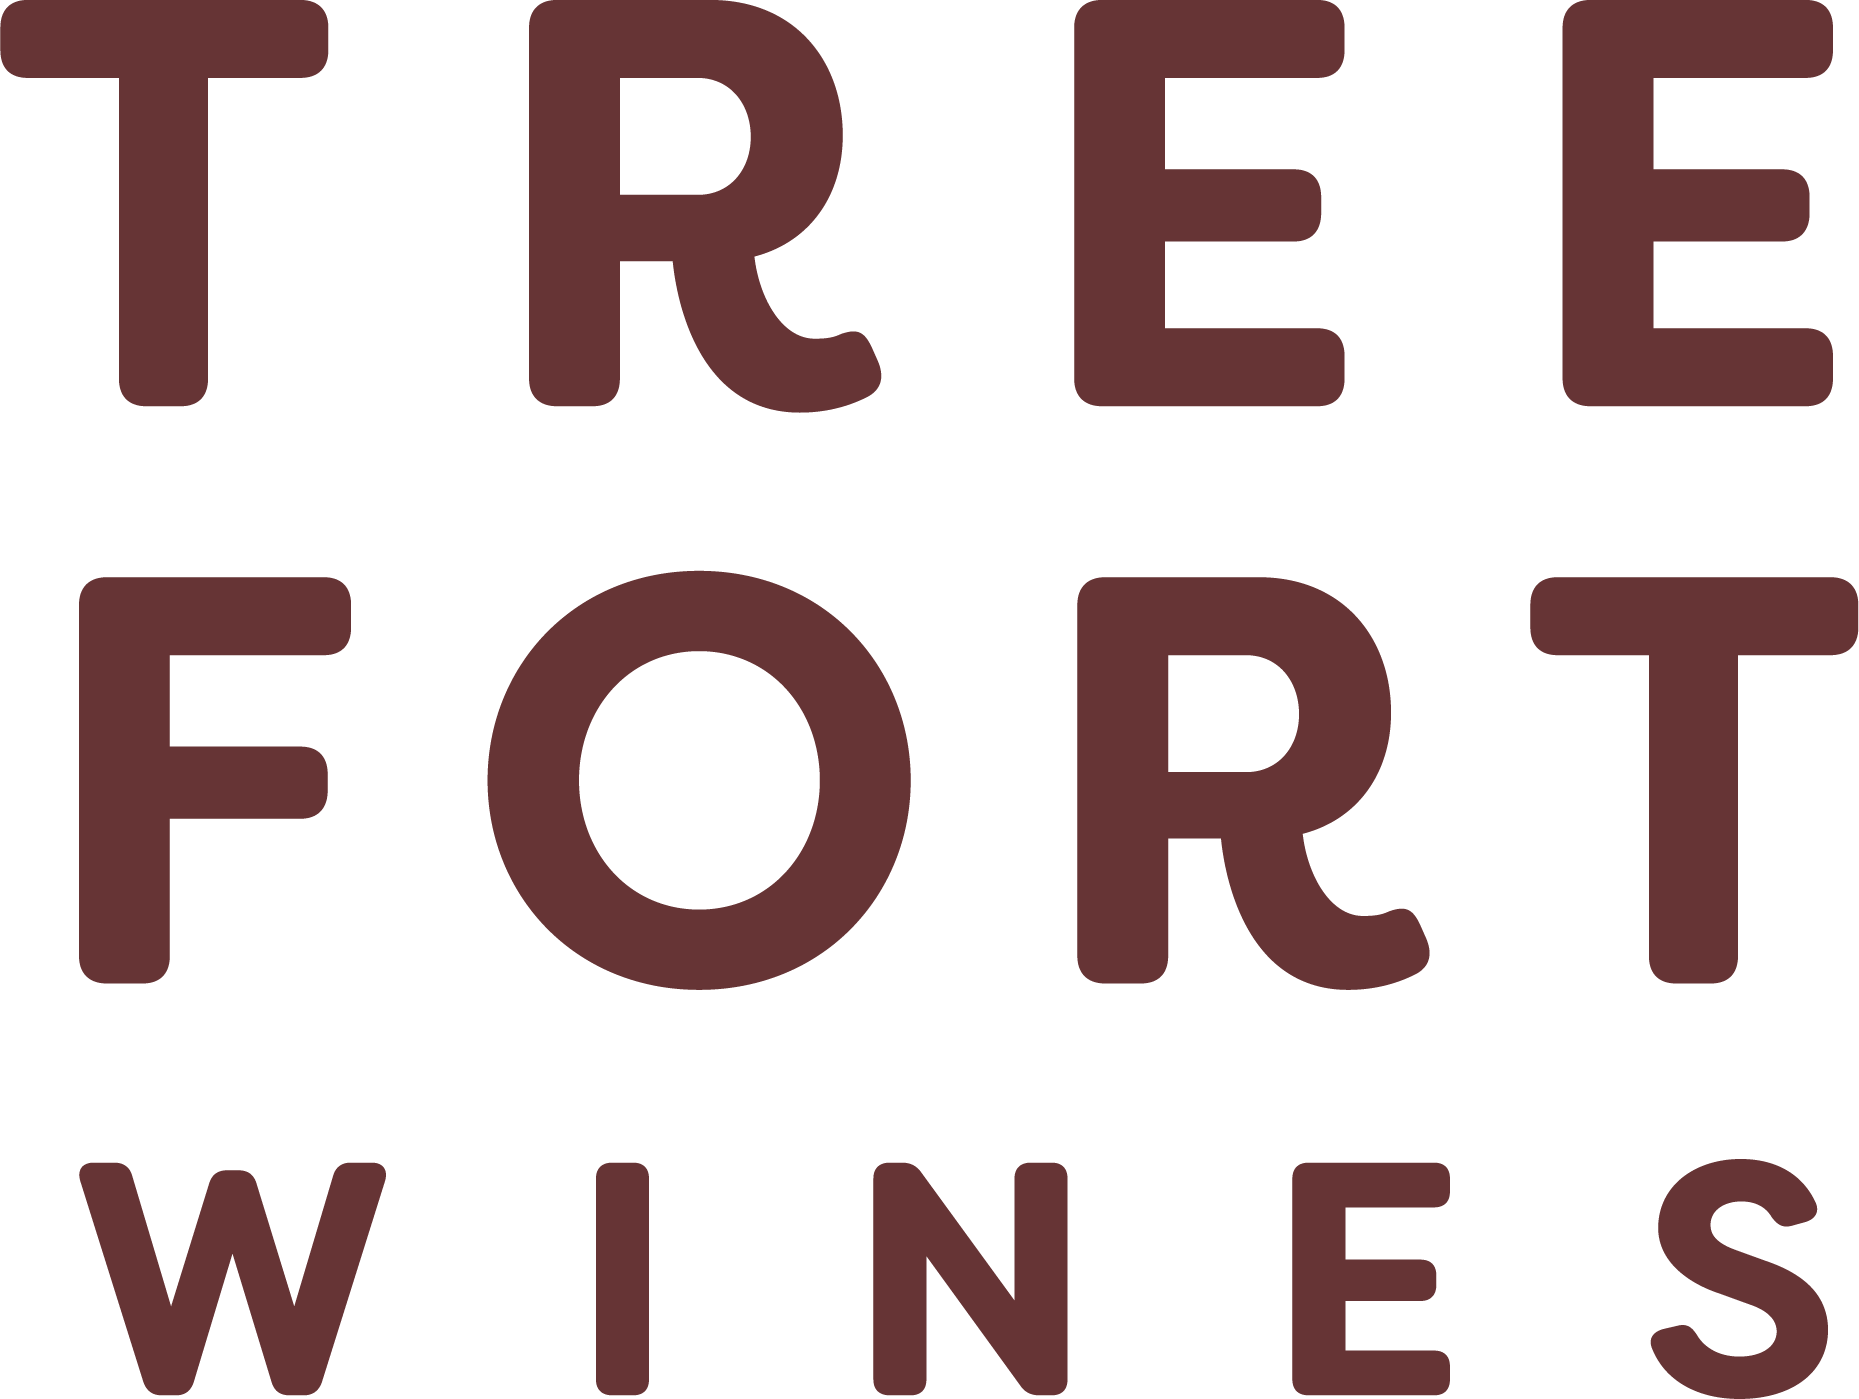 Tree Fort Wines